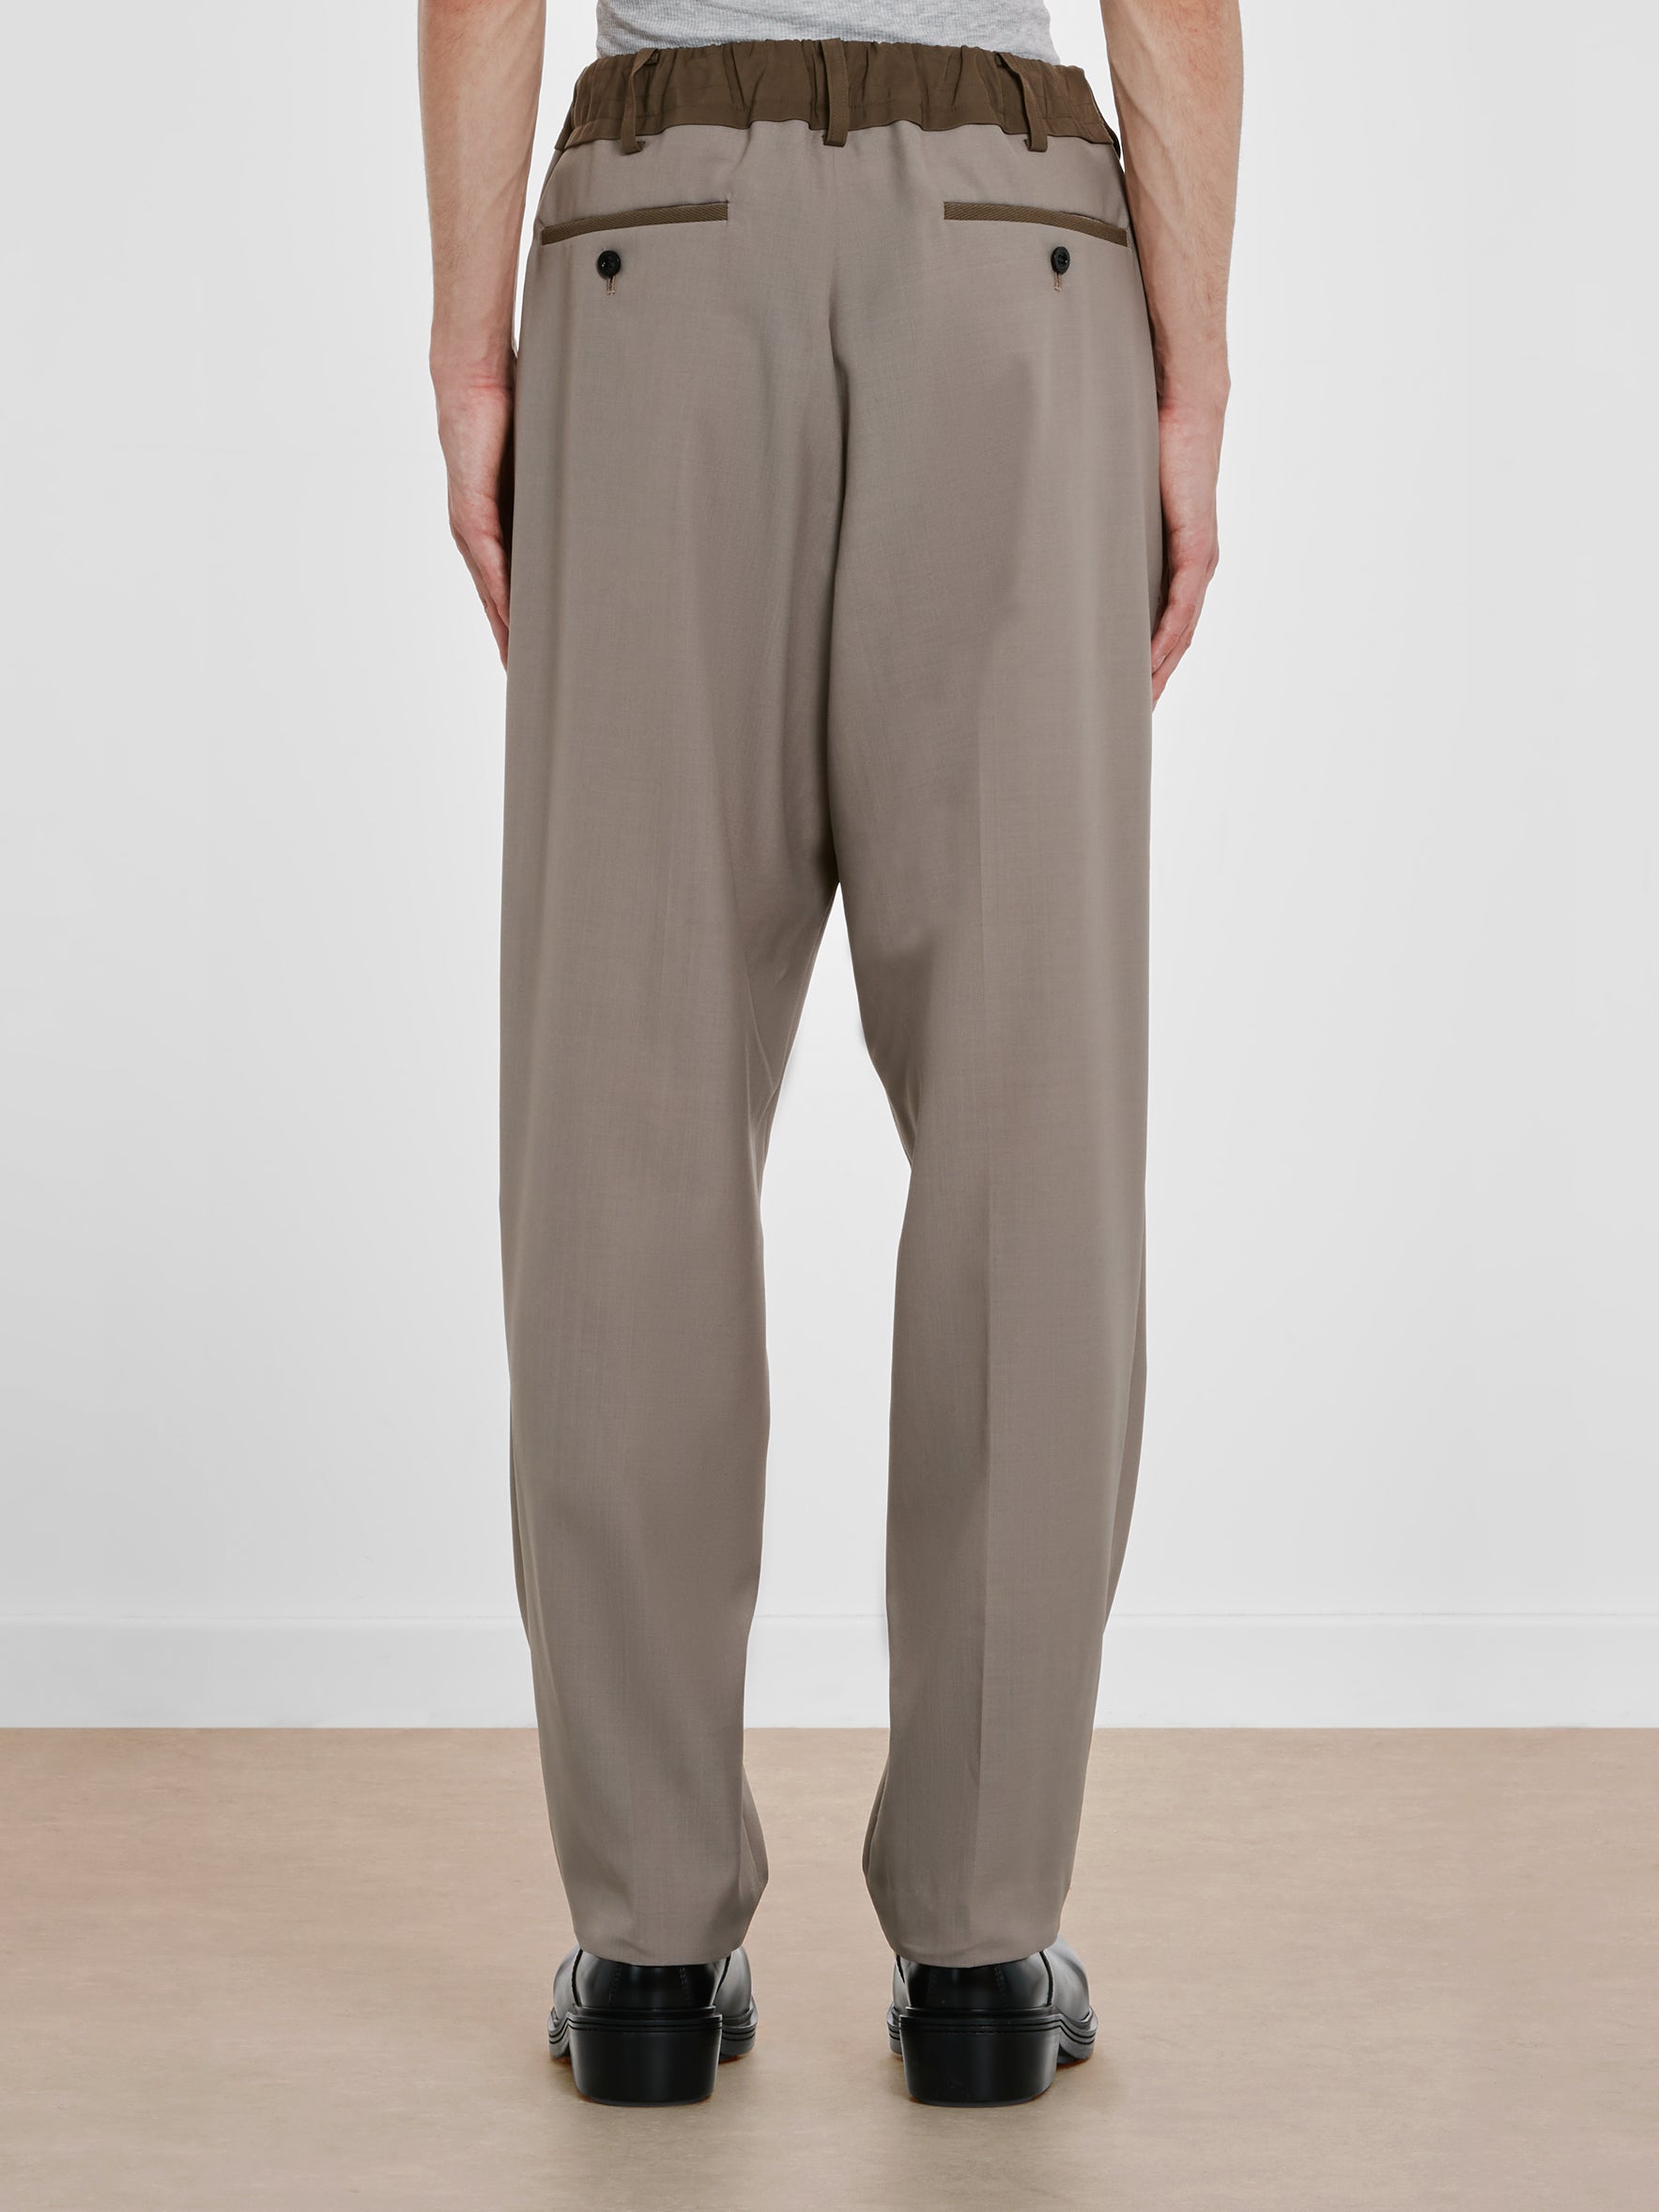 Sacai - Men's Suiting Pants - (Brown)